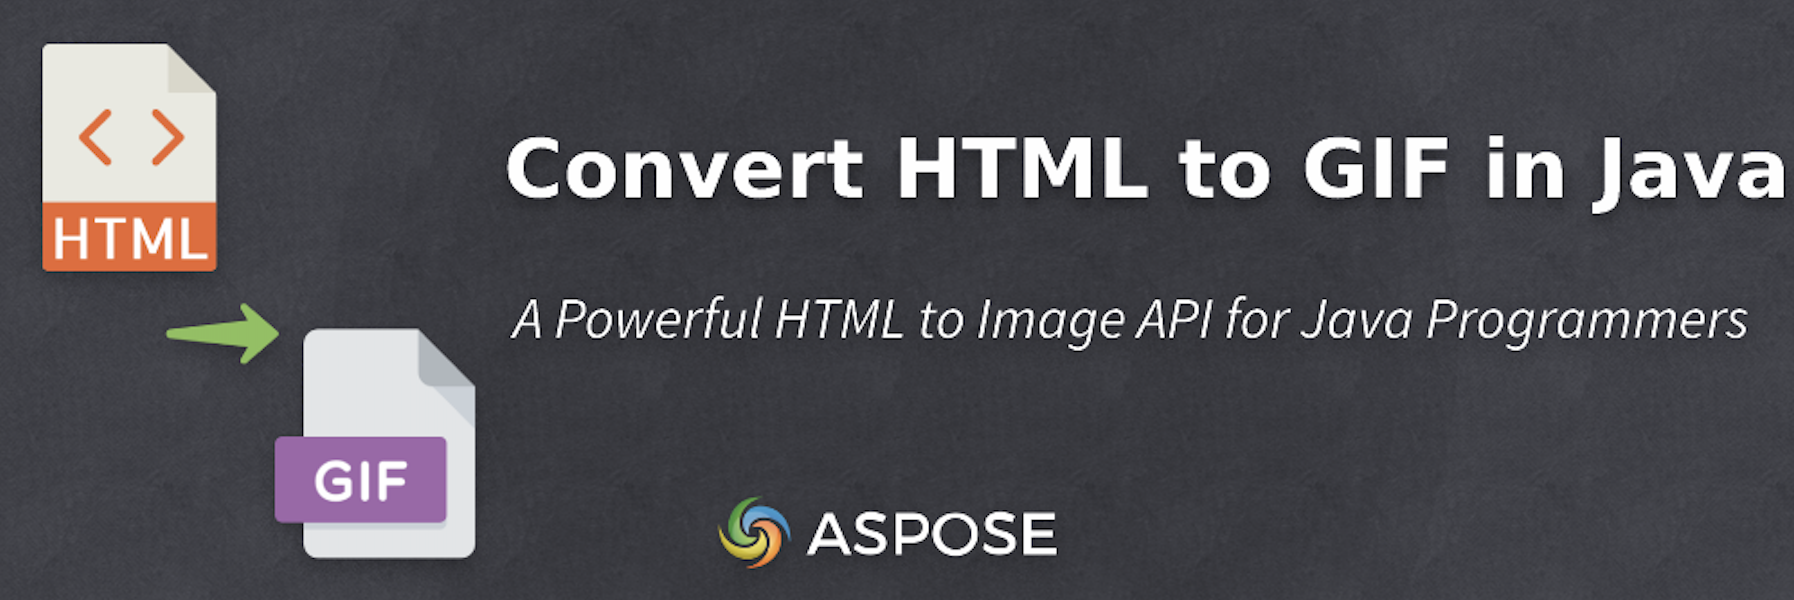 Converta HTML em GIF em Java programaticamente